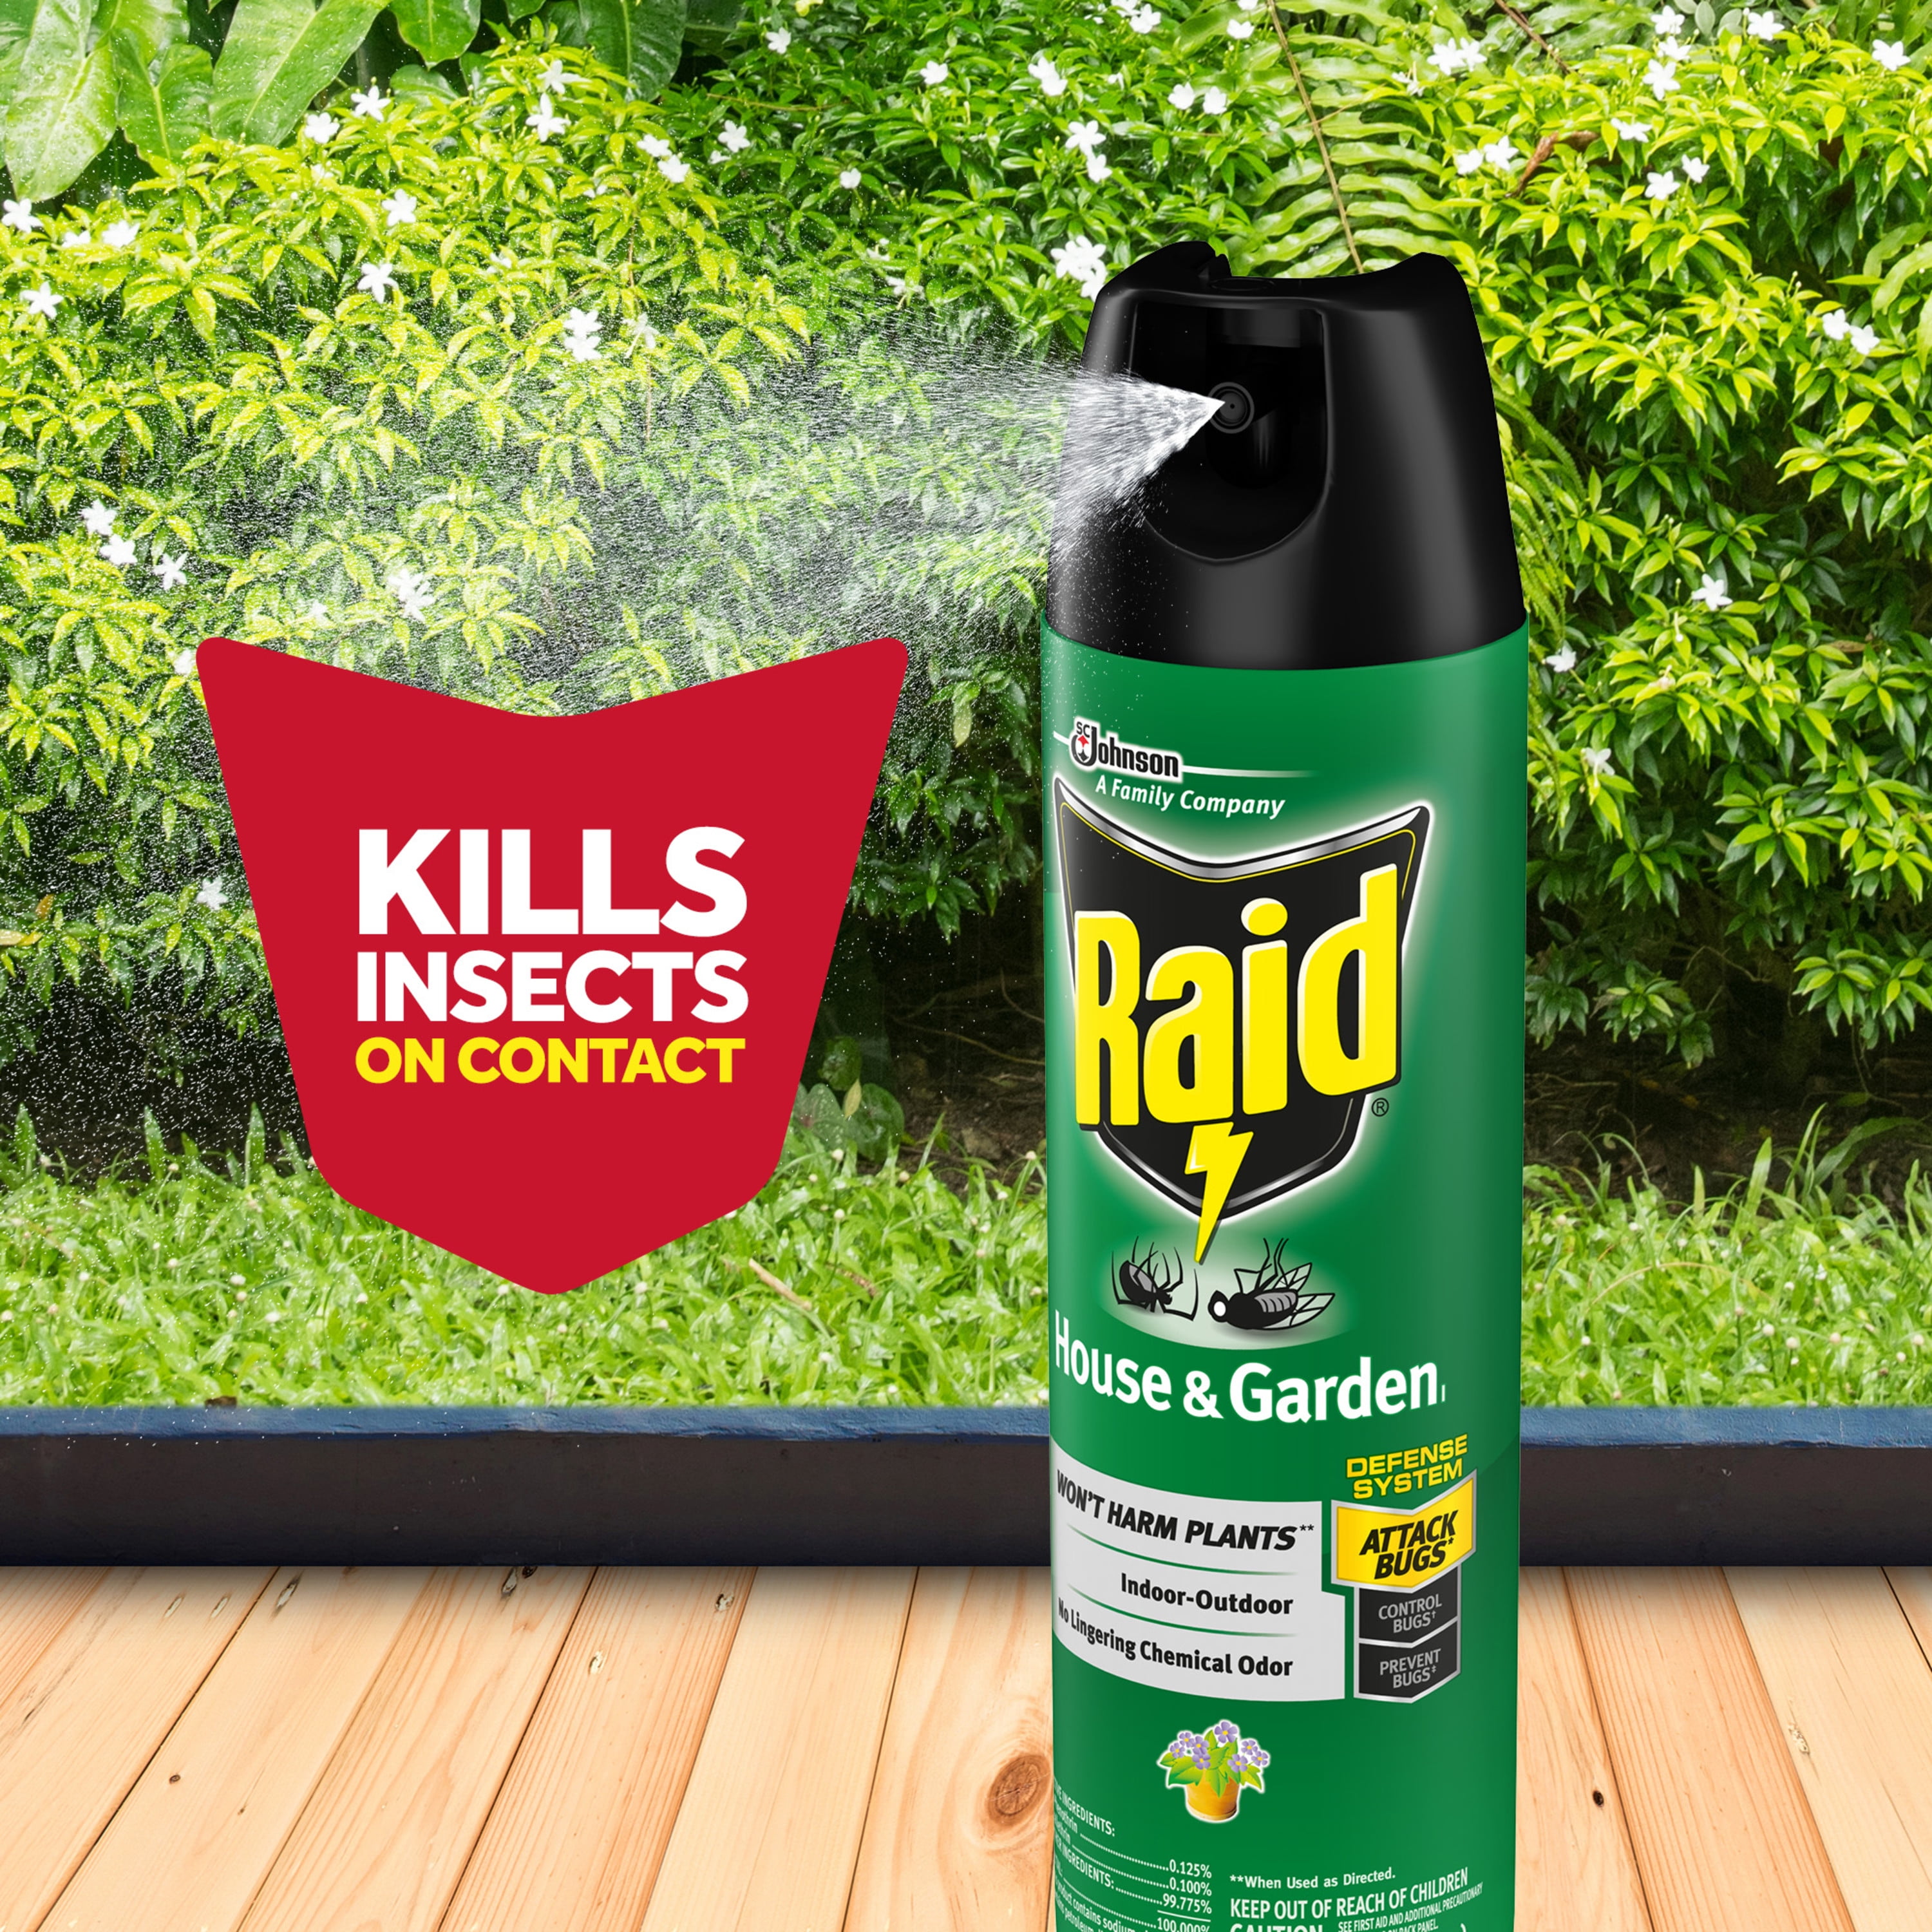 Houseplant & Indoor Garden Insect Spray